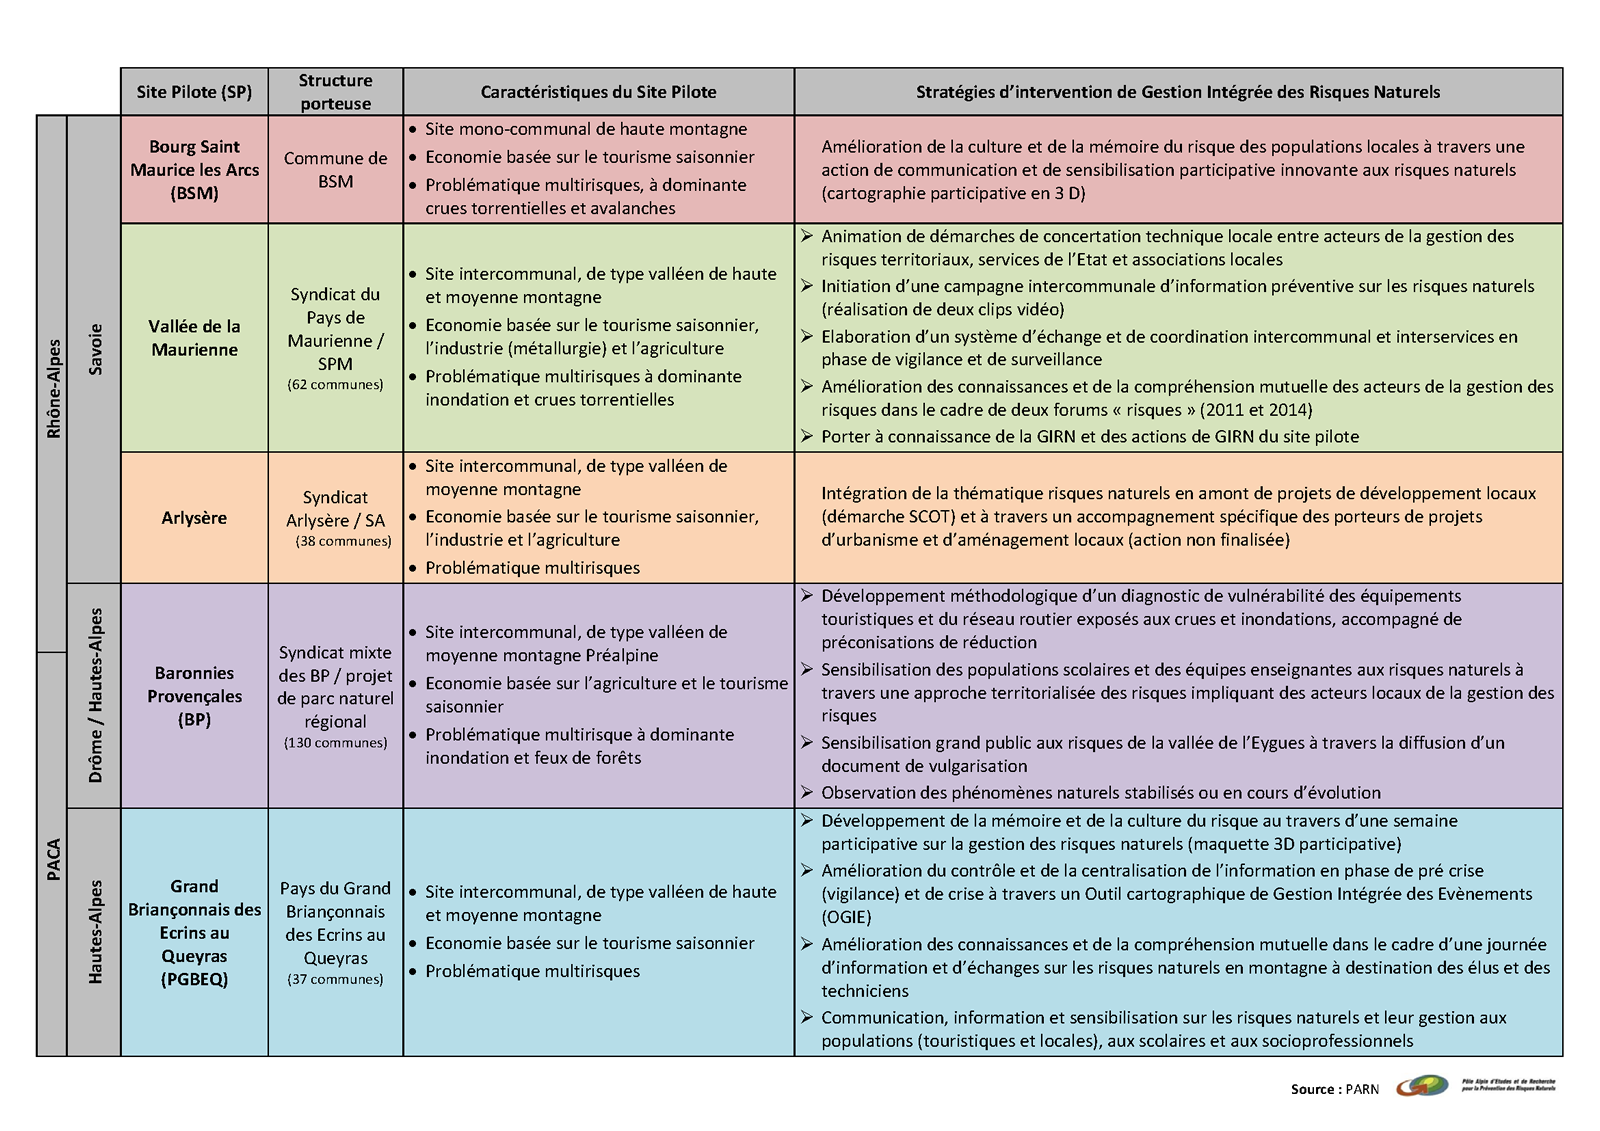 Tableau synthétique sur les stratégies d’intervention de Gestion Intégrée des Risques Naturels des sites pilotes de l’opération de 2009 à 2013